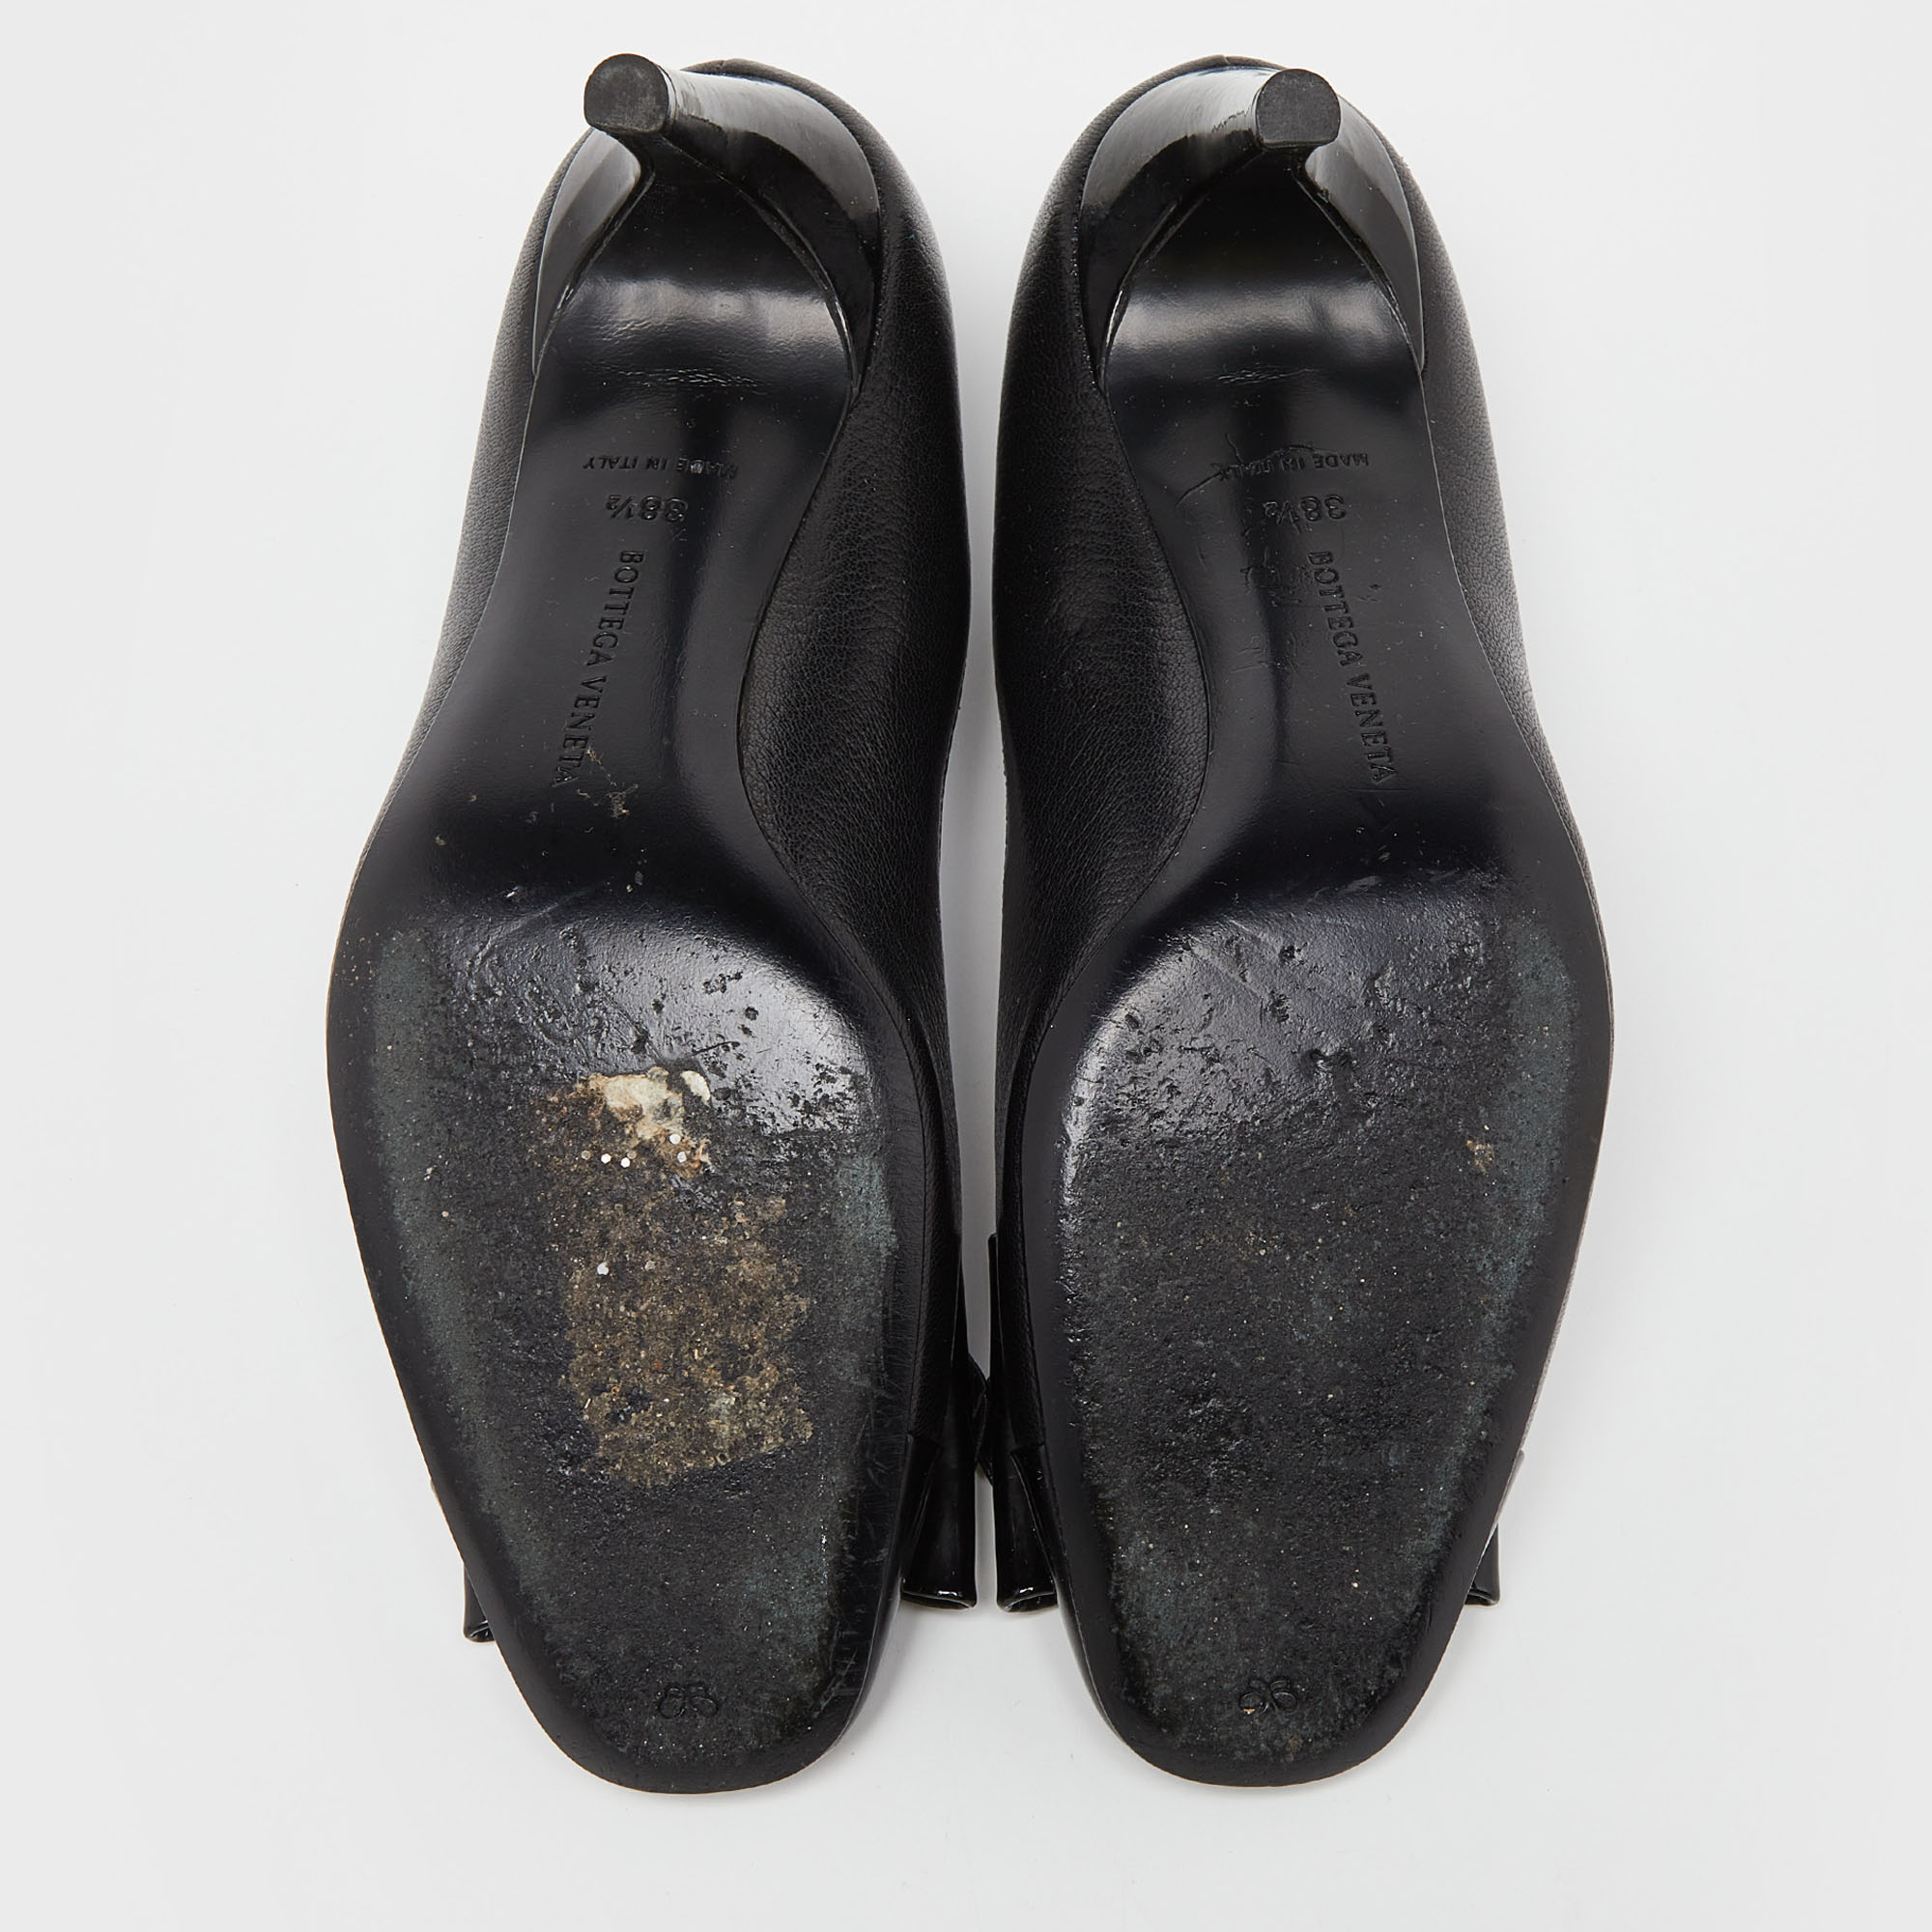 Bottega Veneta Black Leather And Patent Cap Toe Bow Pumps Size 38.5